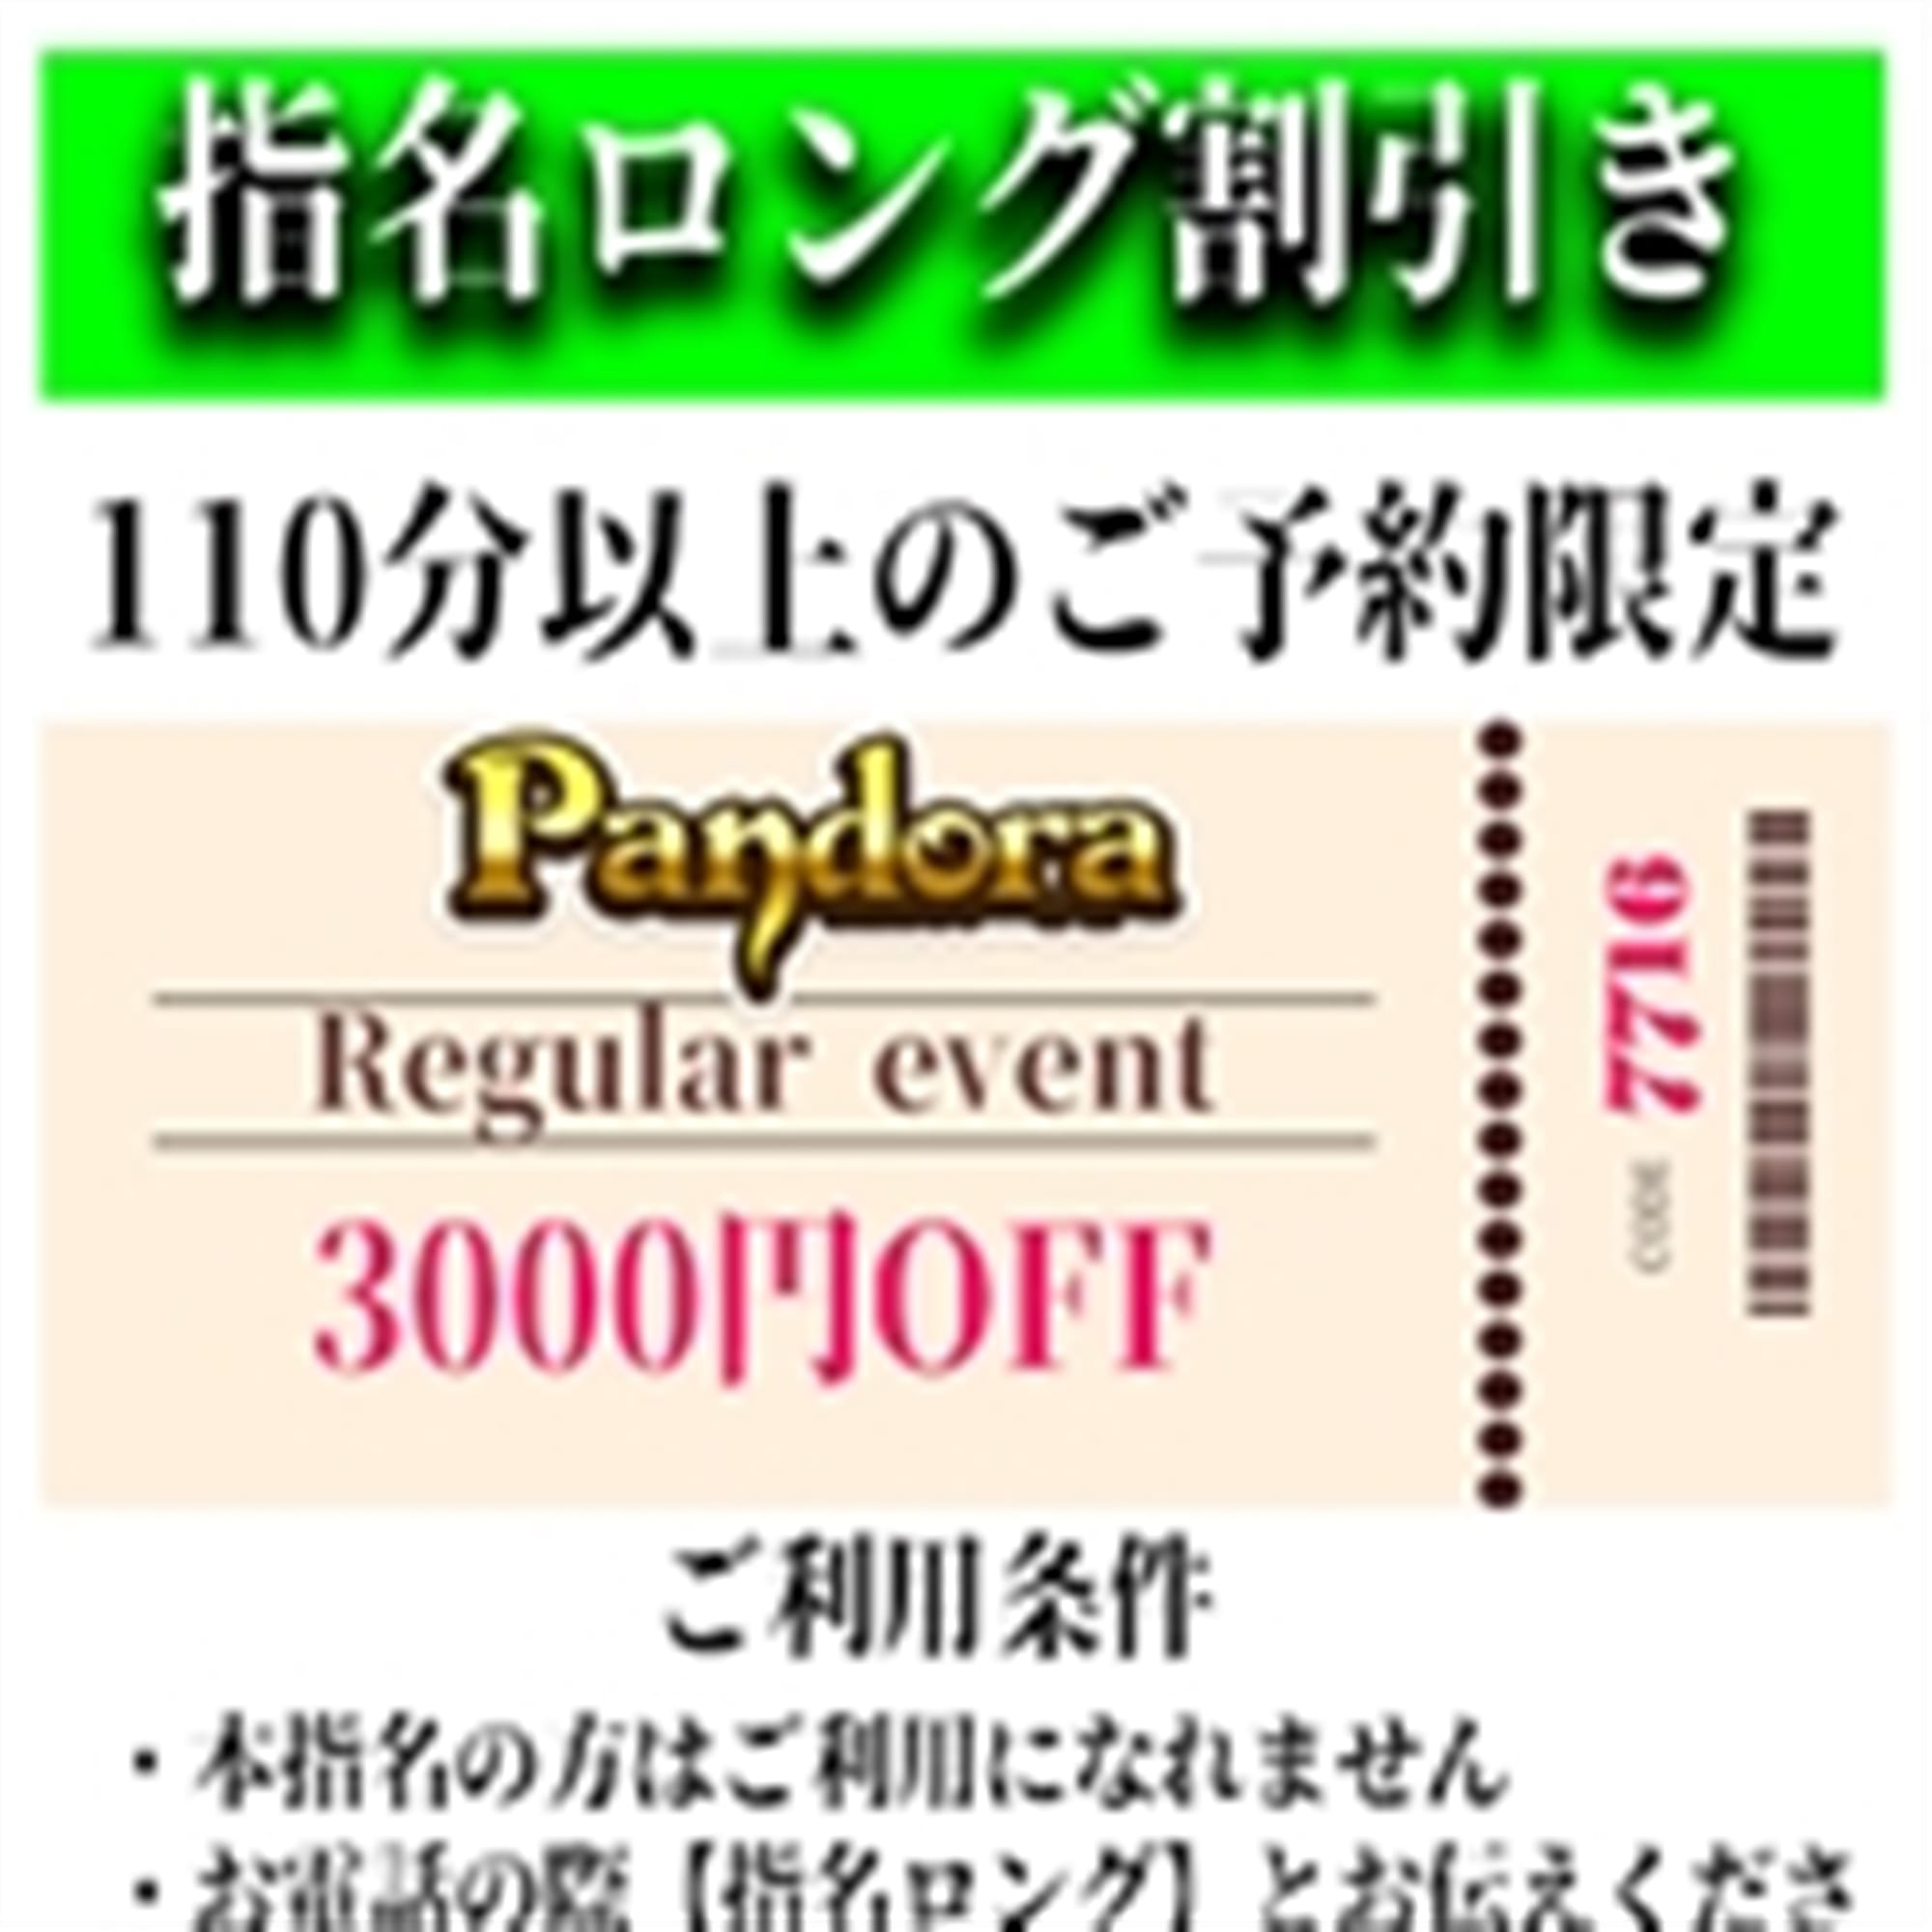 「ご指名のお客様も遊べるロングコース割引」04/27(土) 04:01 | Pandora(パンドラ)新潟のお得なニュース